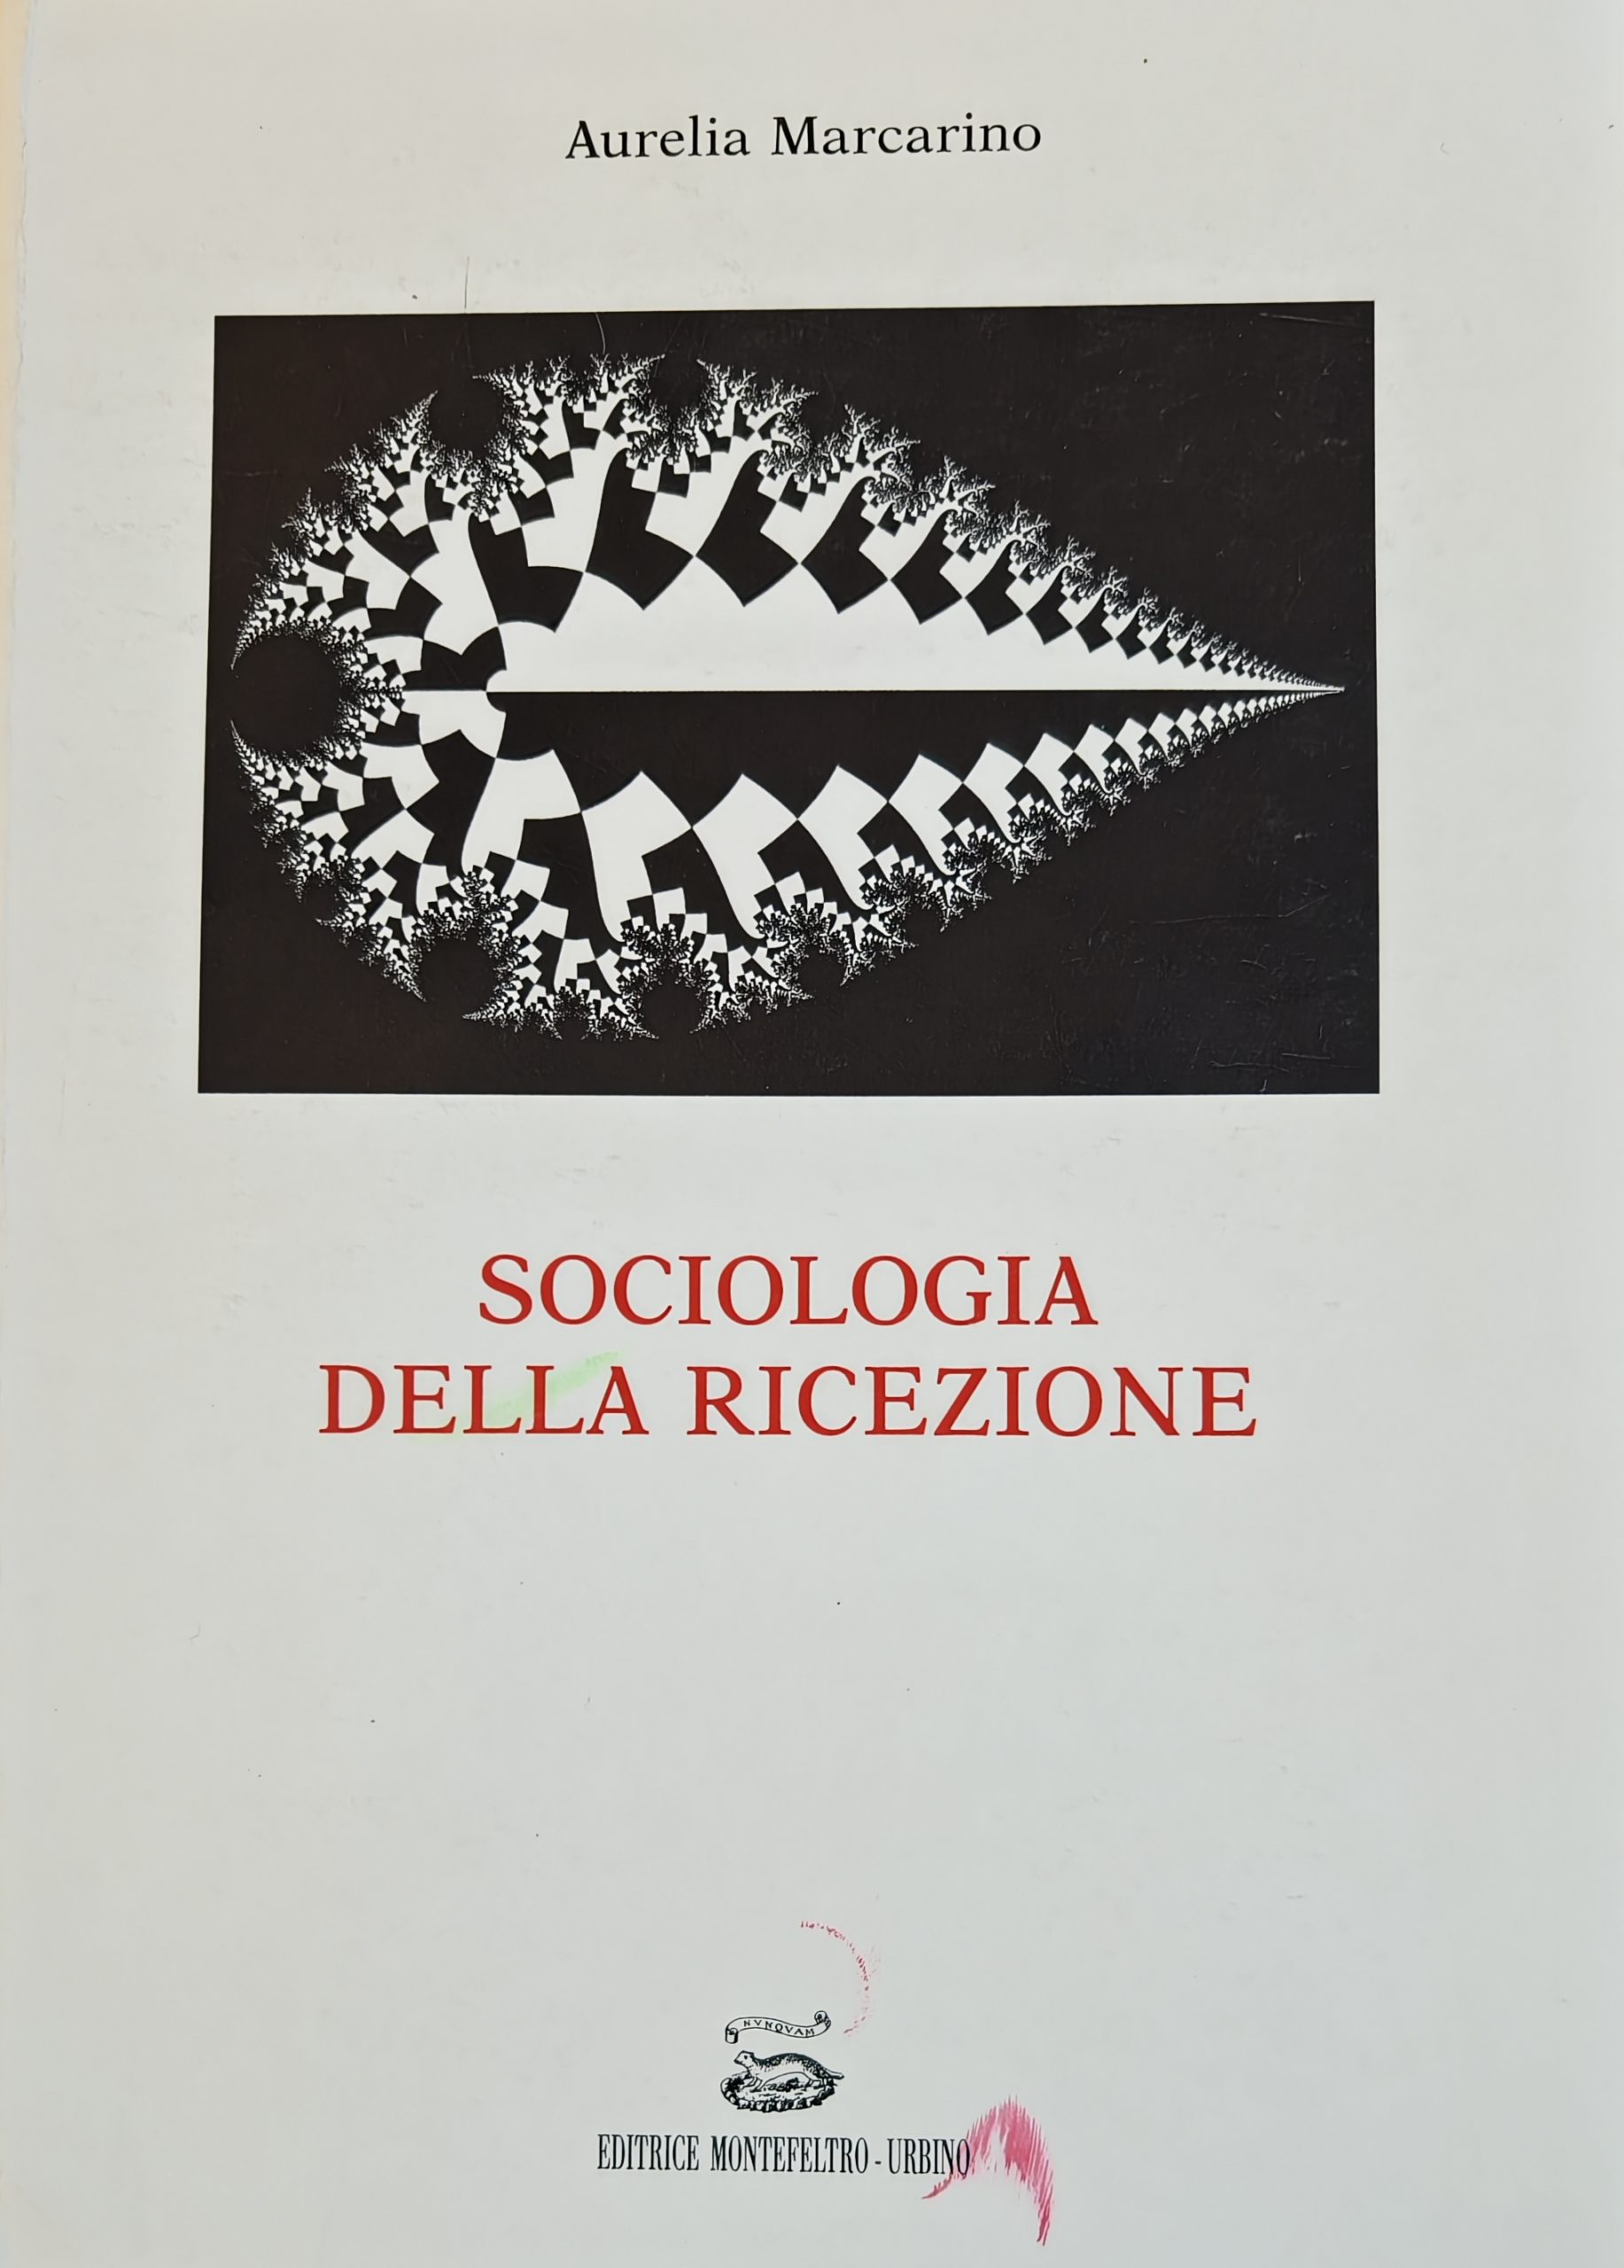 A caccia del raro e mai ristampato “Sociologia della ricezione” (1989) di Aurelia Marcarino